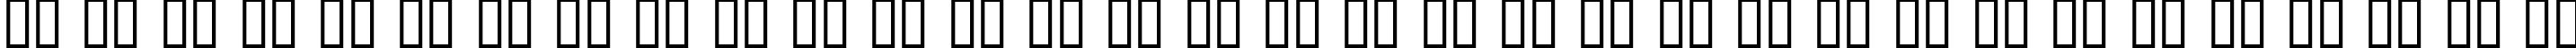 Пример написания русского алфавита шрифтом blemished